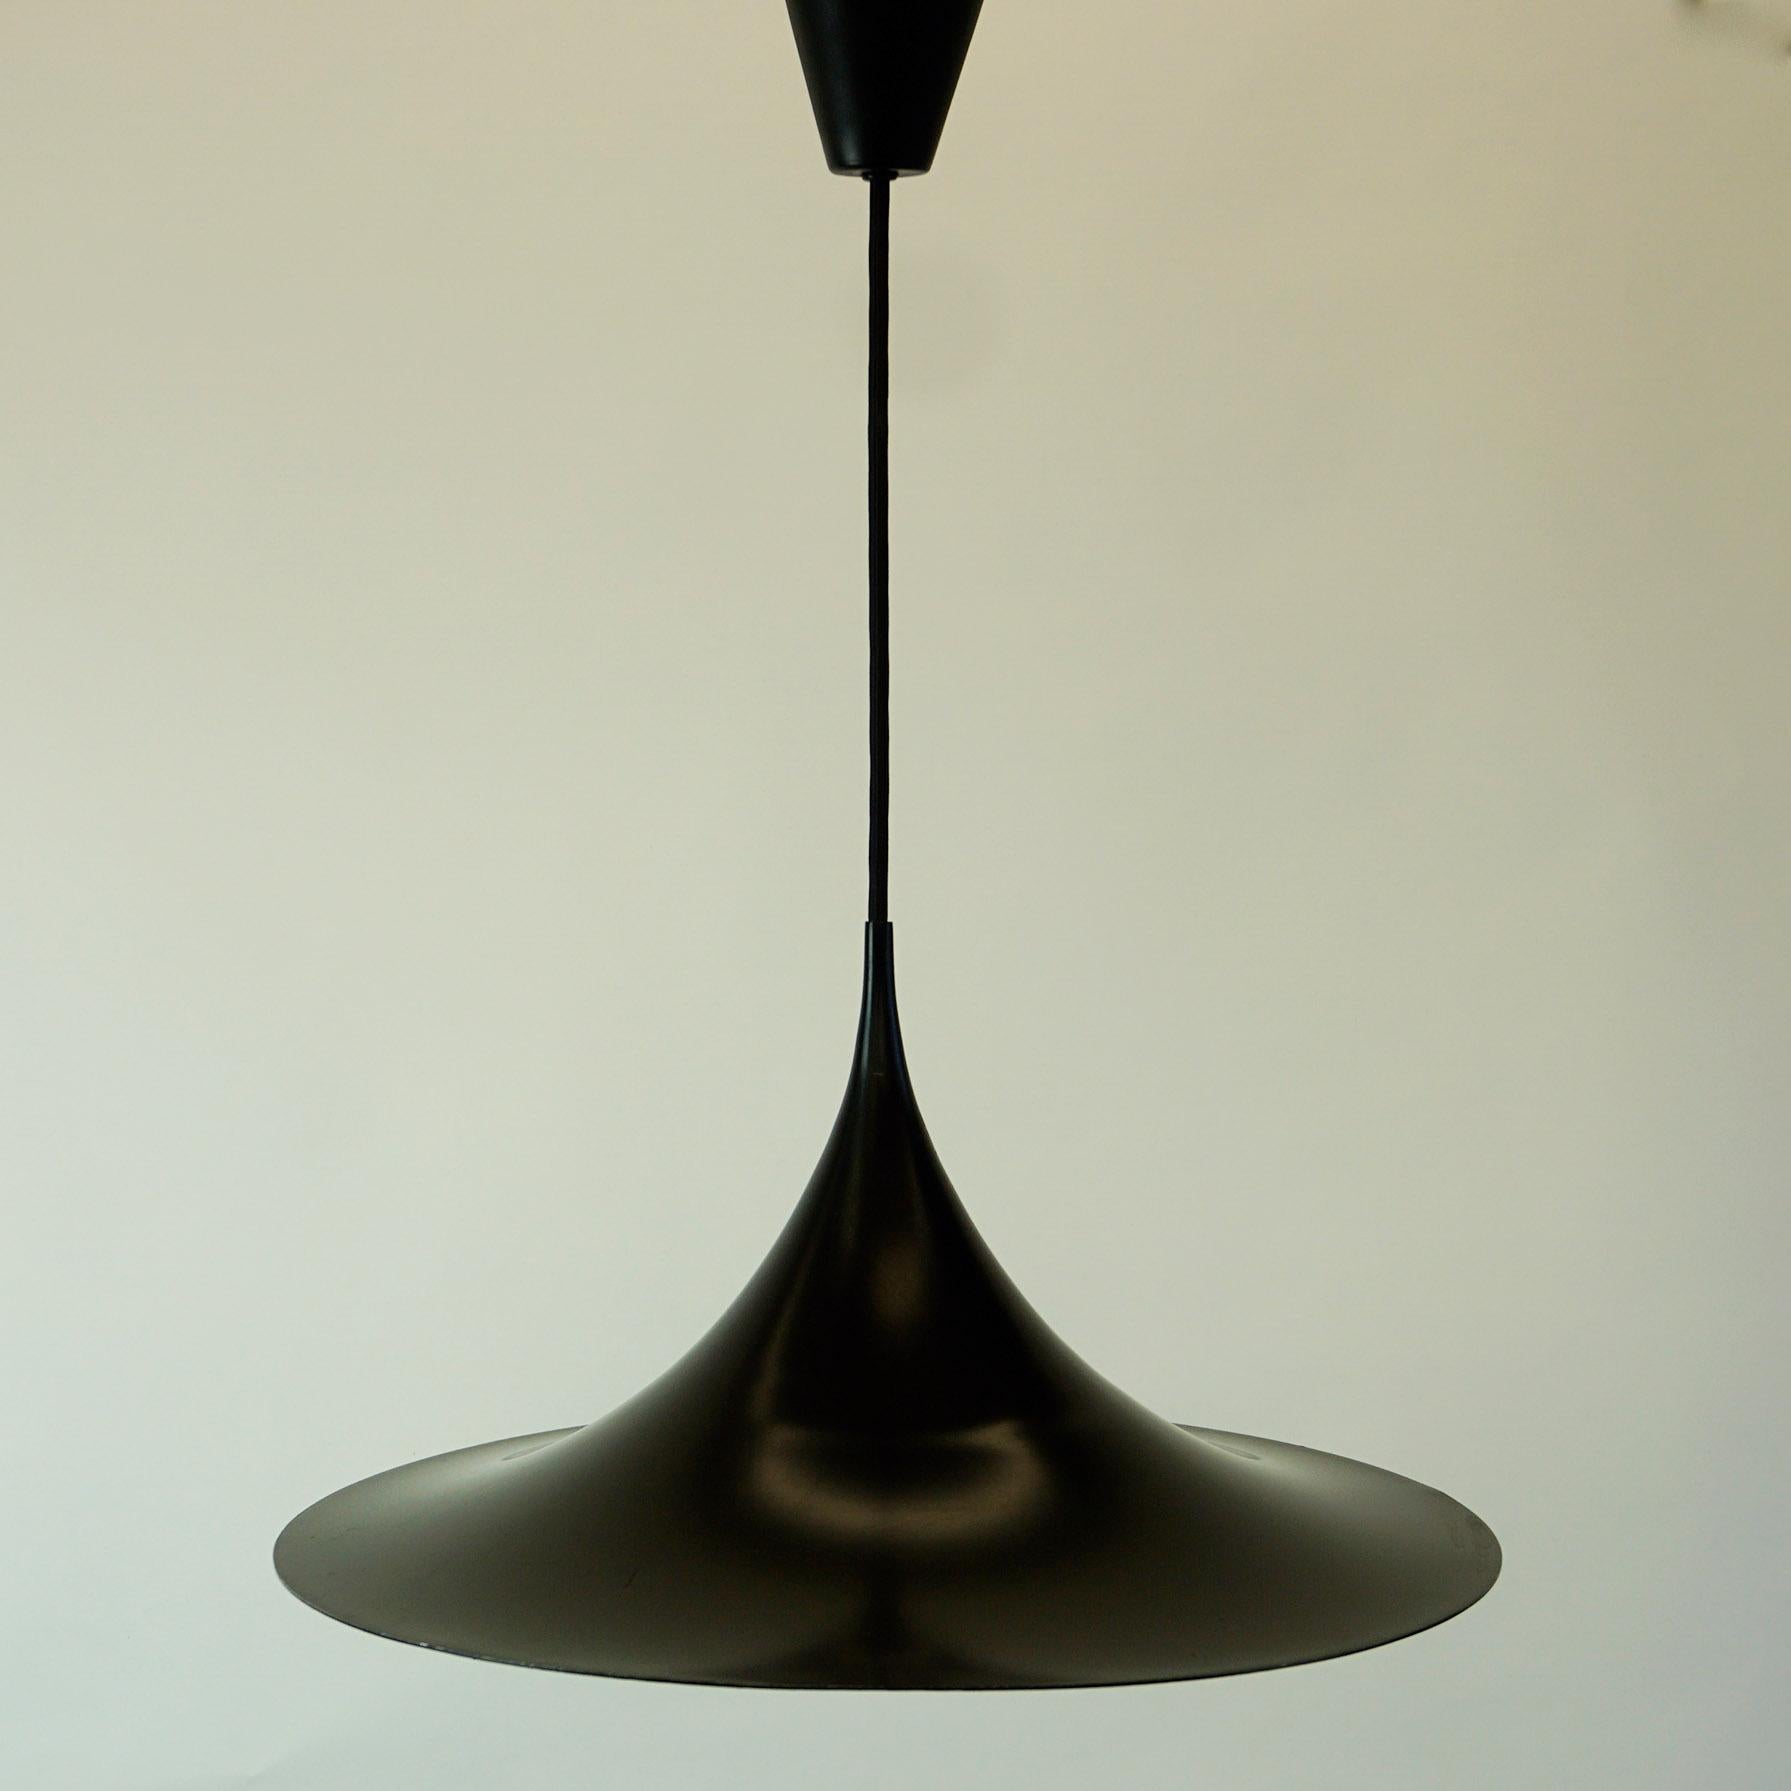 Lacquered Scandinavian Modern Black Semi Pendant Lamp by Bonderup & Thorup for Fog & Mørup